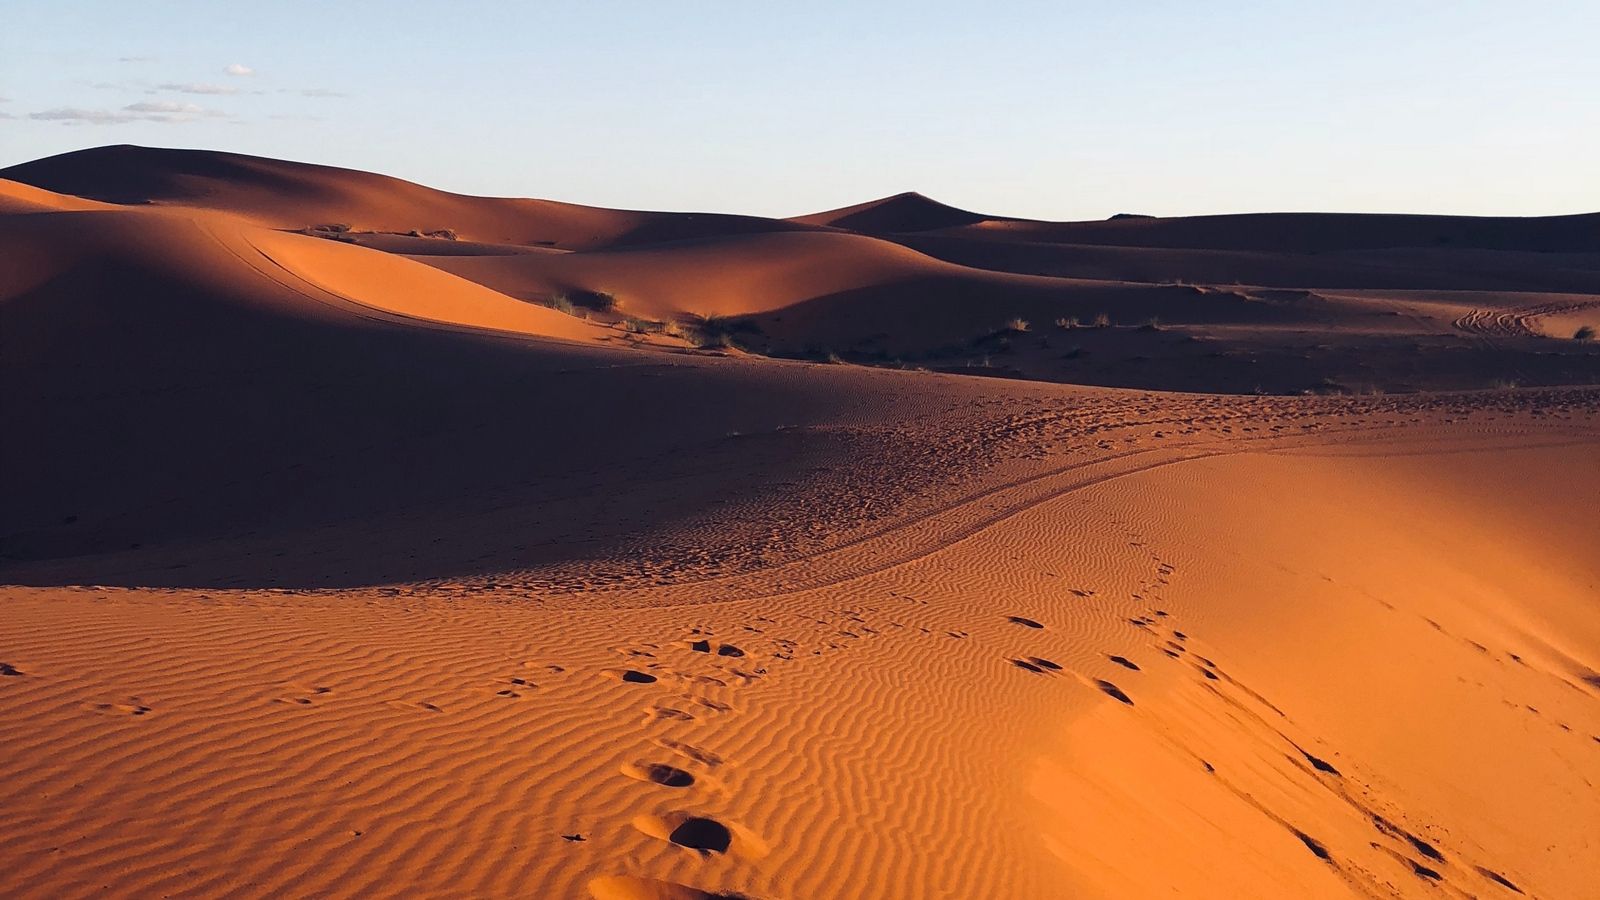 Download wallpaper 1600x900 desert, sand, footprint, morocco